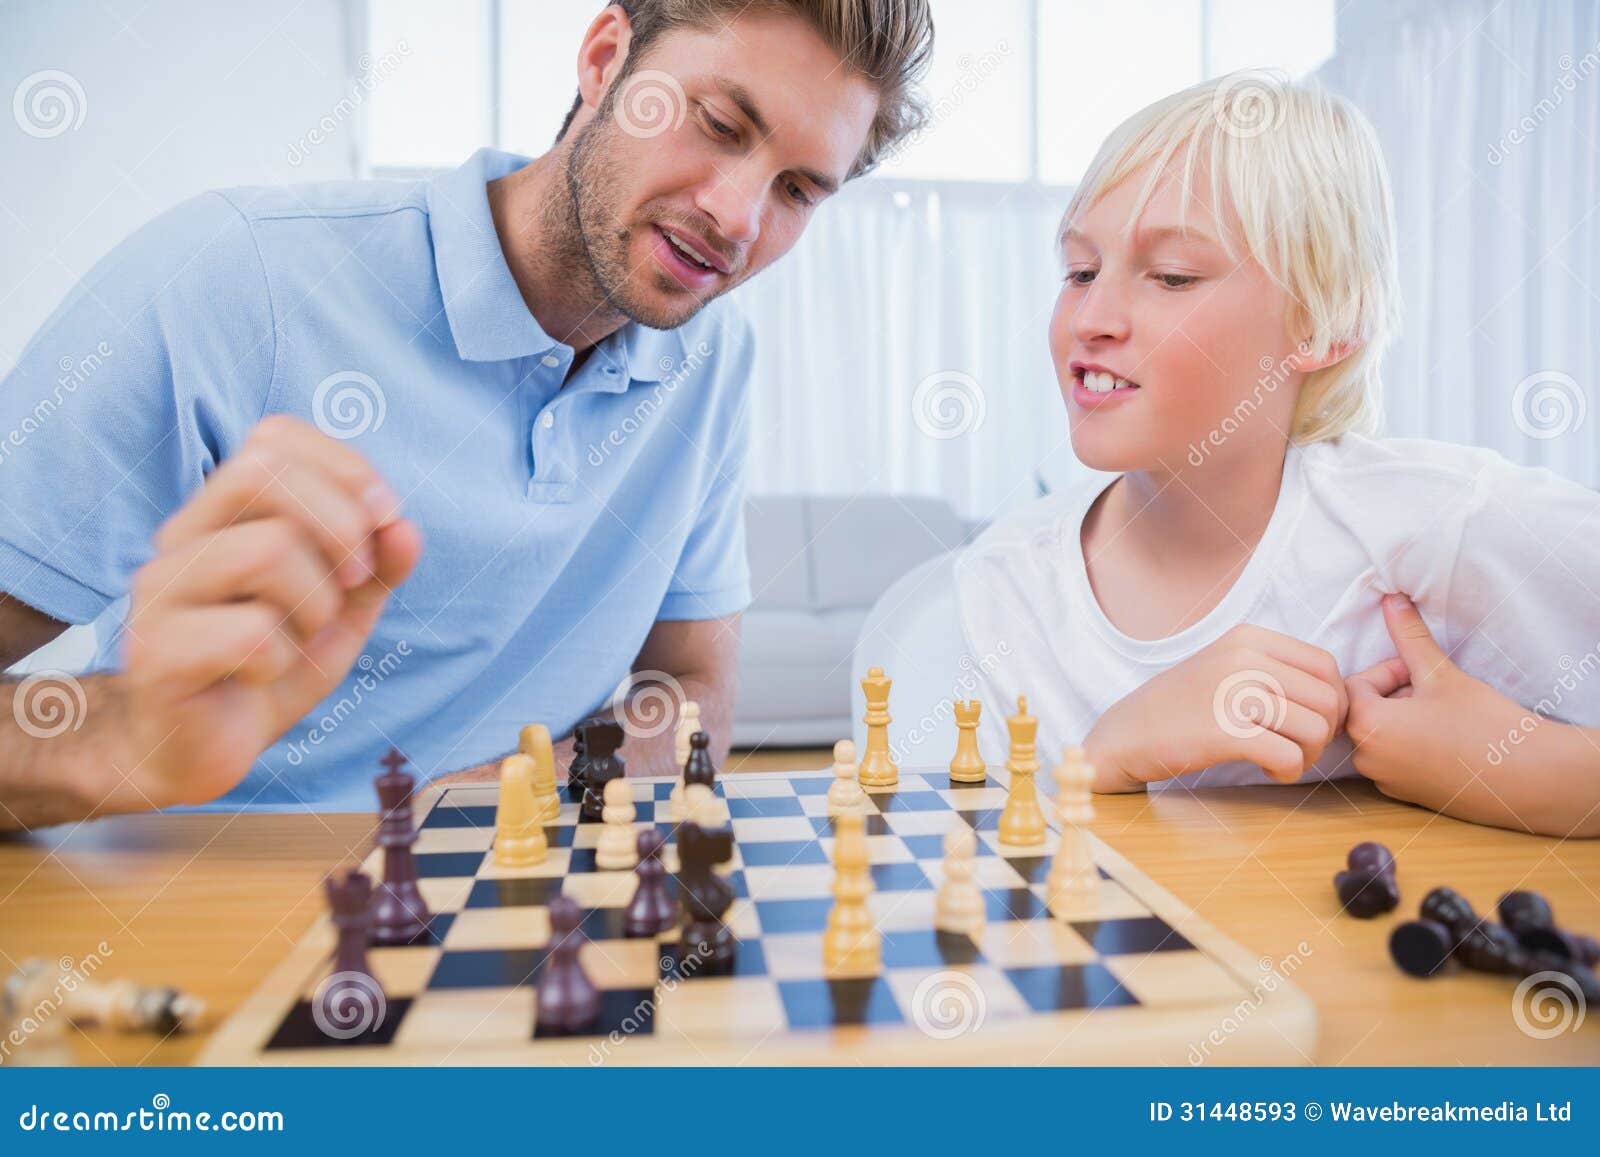 Папа играет в шахматы. Игра в шахматы отец и сын. Папа с сыном играют в шахматы. Папа с сыном играют в шахматы фото.